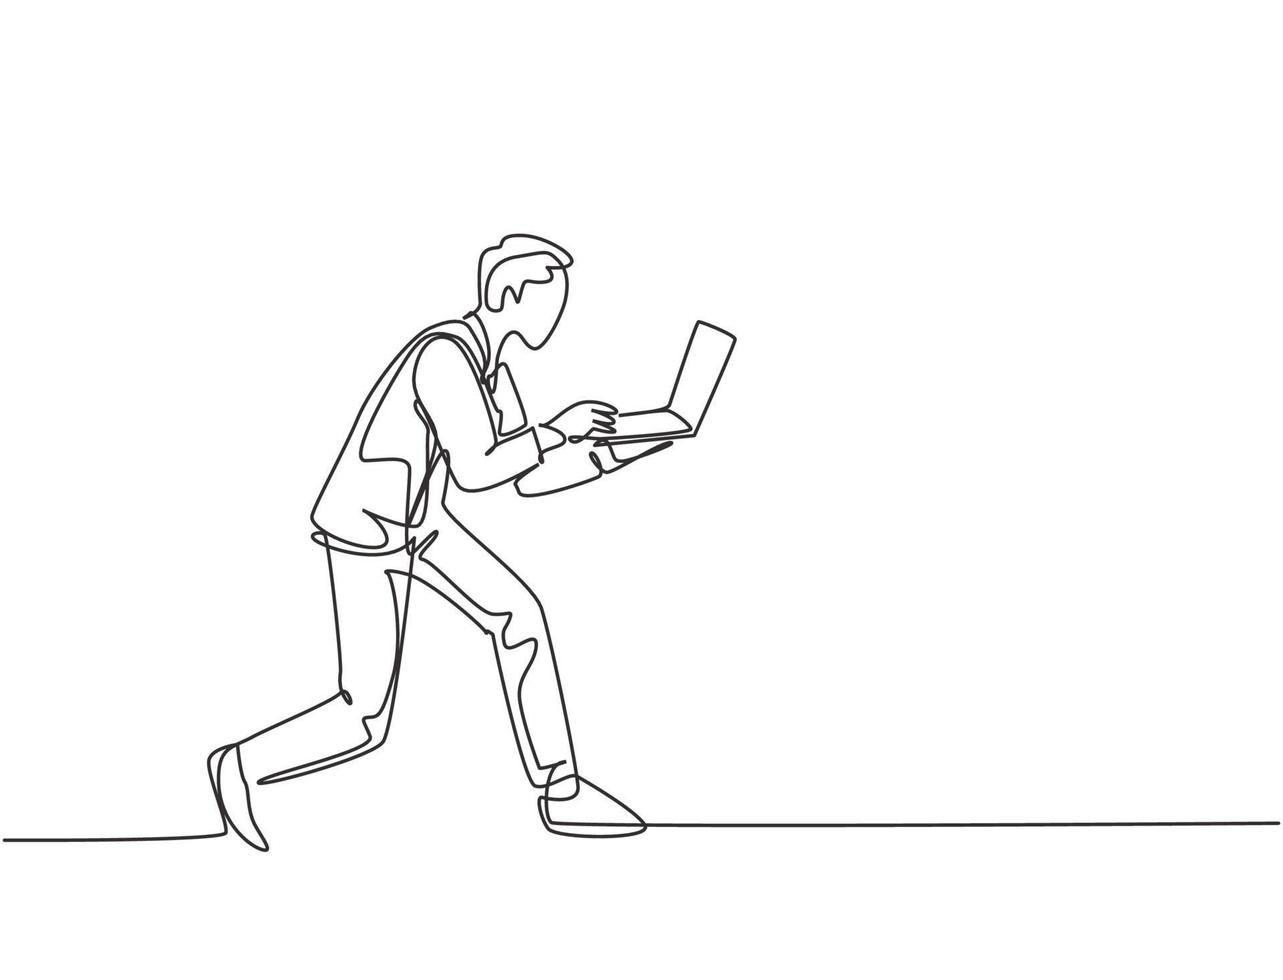 en kontinuerlig enkelradsteckning av ung rusa manlig arbetare som skriver på bärbar dator medan han springer springer till kontoret. deadline affärsidé koncept enkel rad rita design vektor grafisk illustration